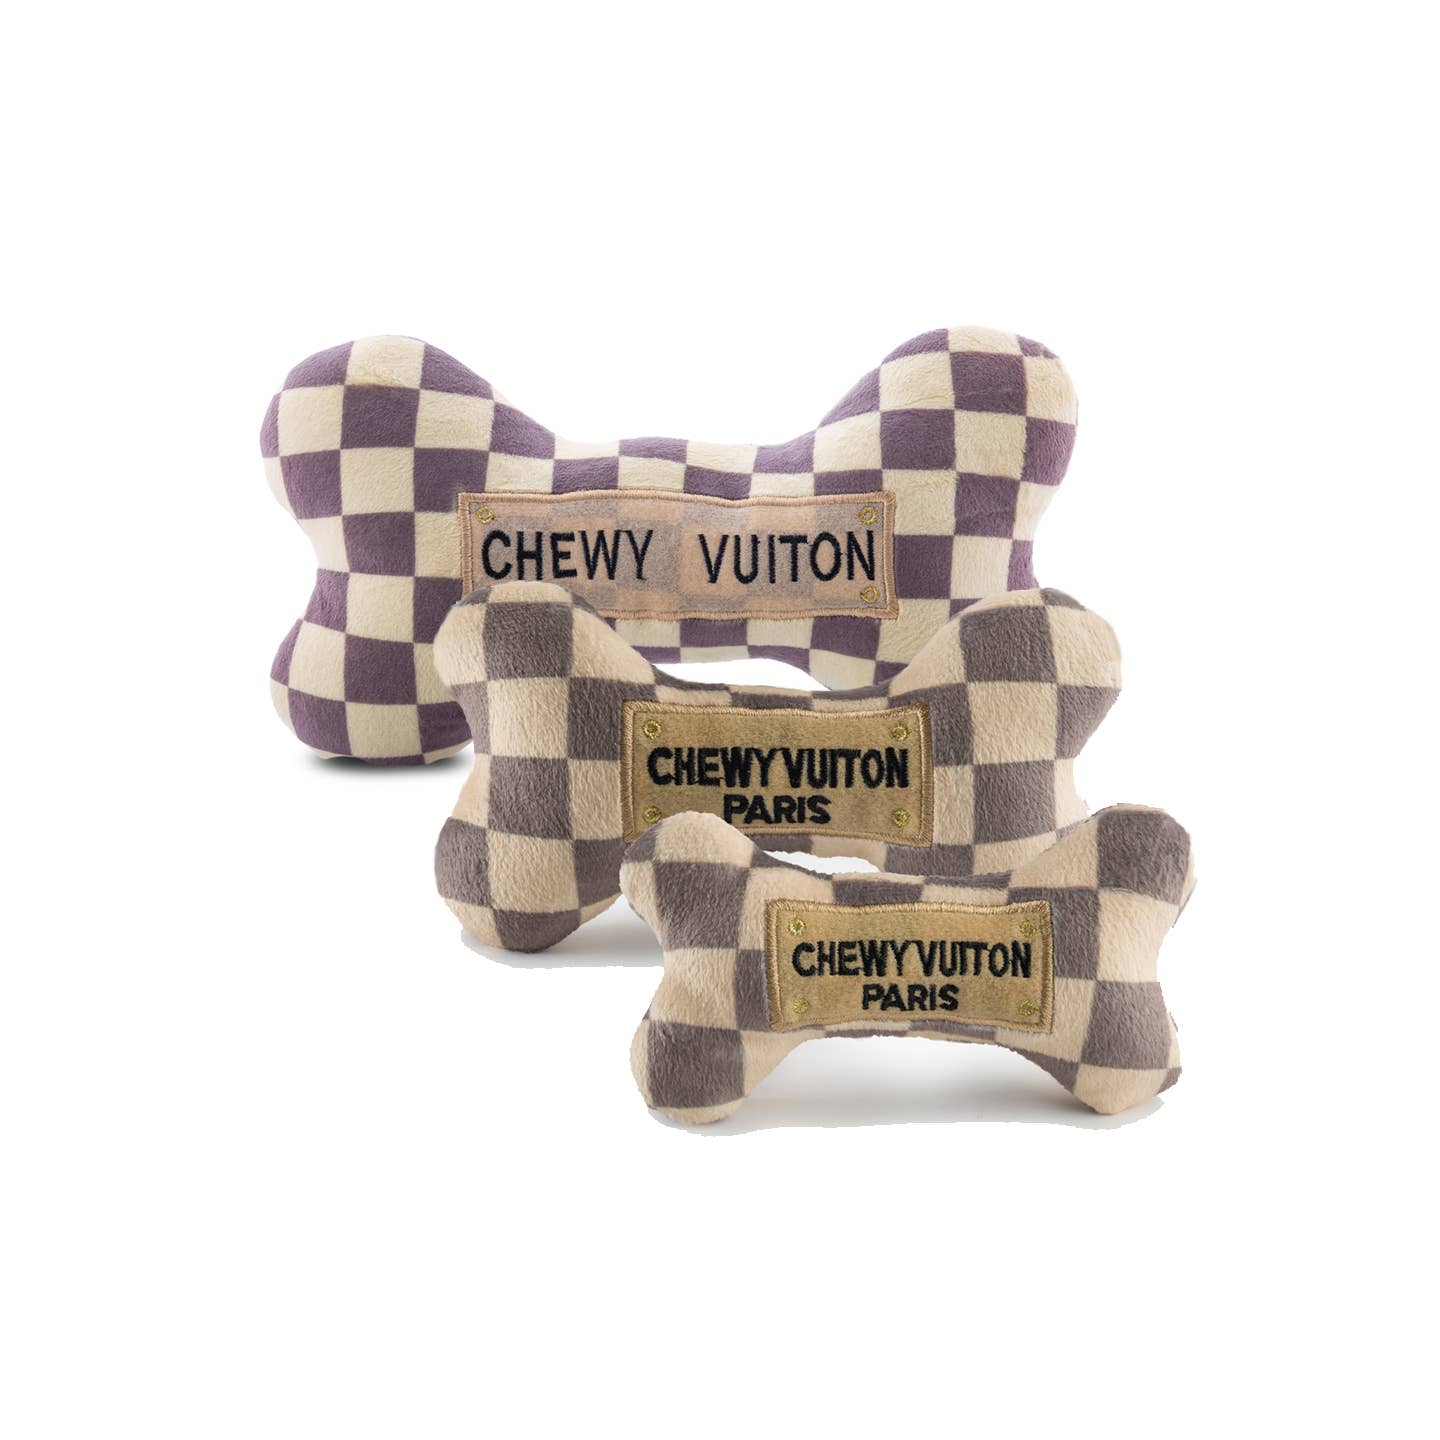 Checker Chewy Vuiton Bones- LG